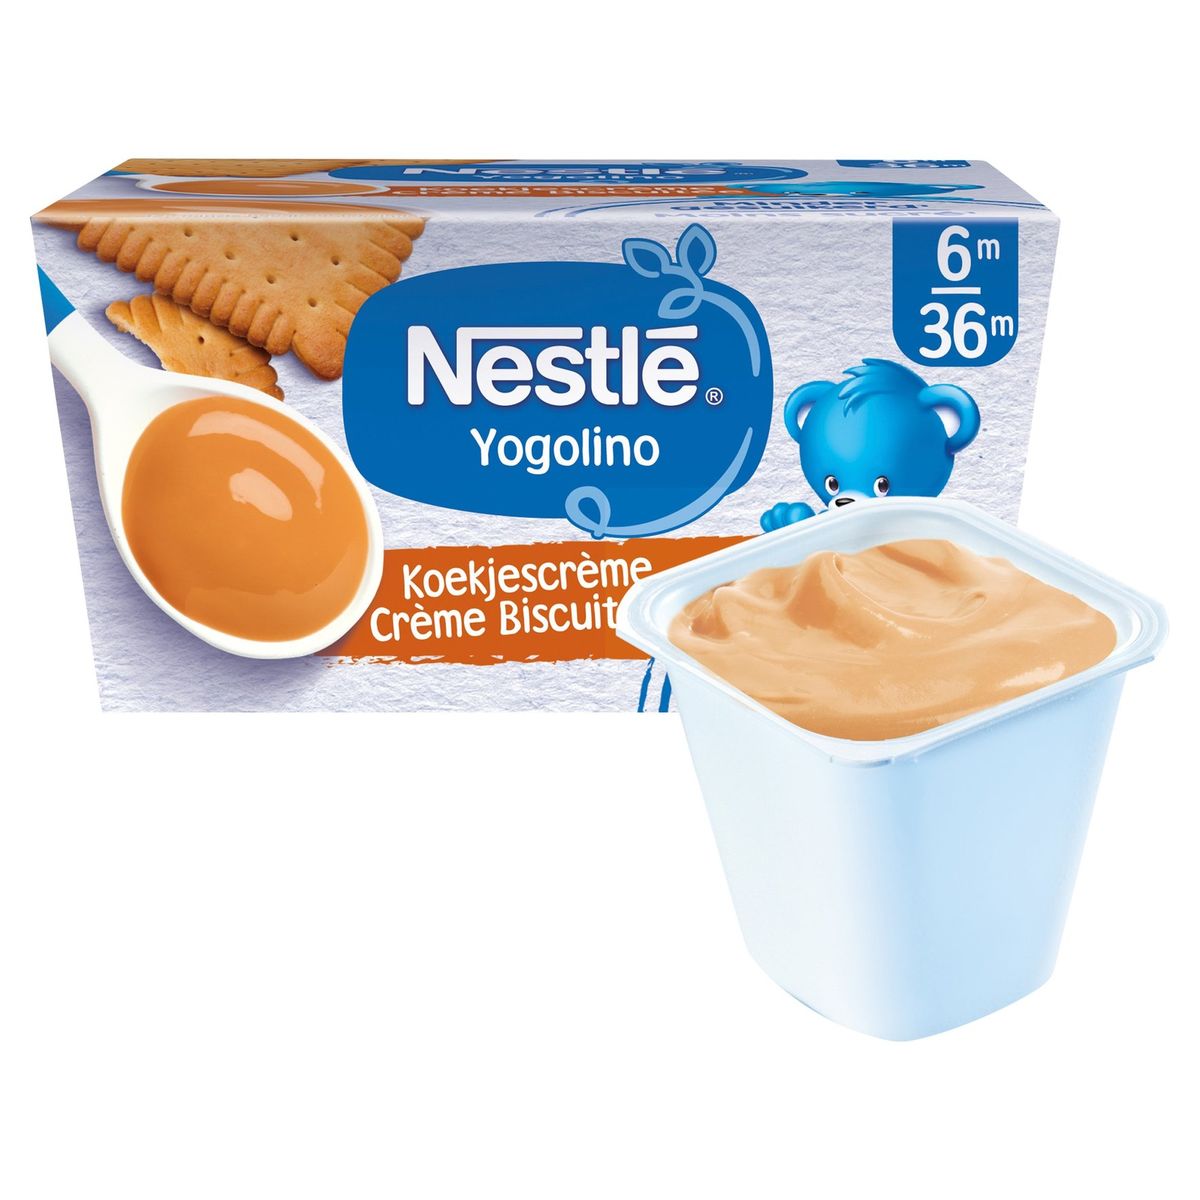 Nestlé Yogolino Laitage Crème Biscuitée dès 6 mois 4x100g